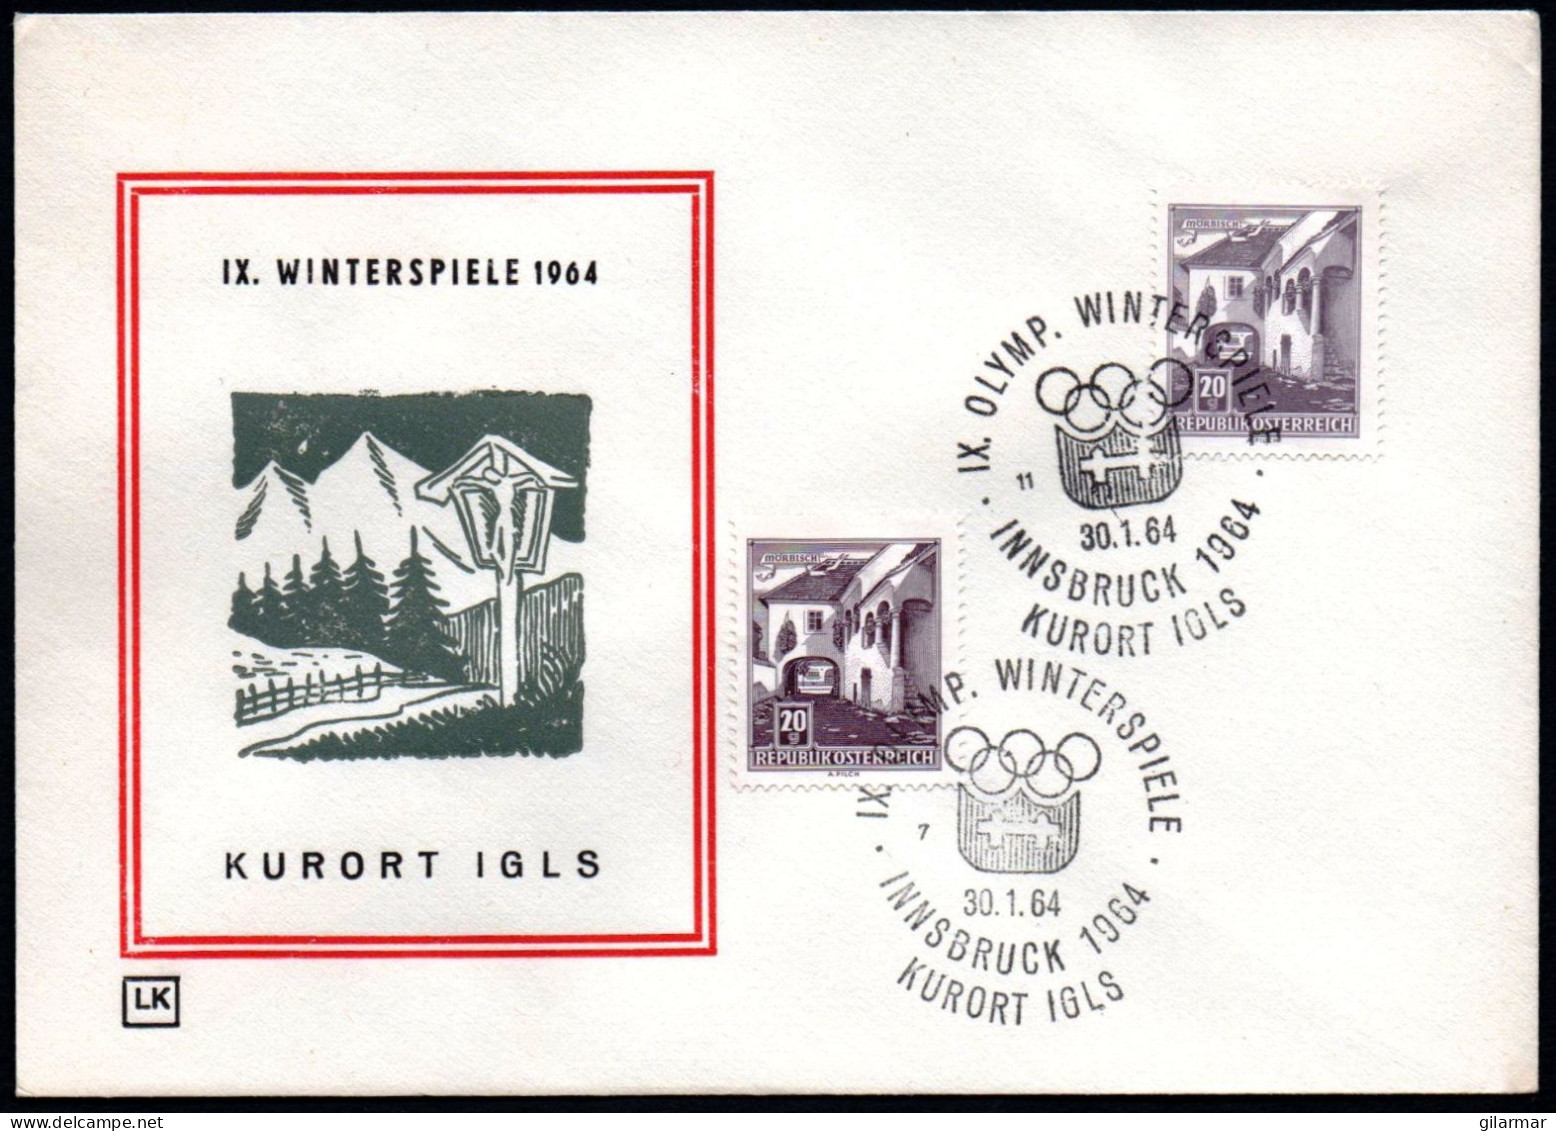 AUSTRIA KURORT IGLS 1964 - IX OLYMPIC WINTER GAMES - INNSBRUCK '64 - CANCELS # 7 & 11 - G - Winter 1964: Innsbruck